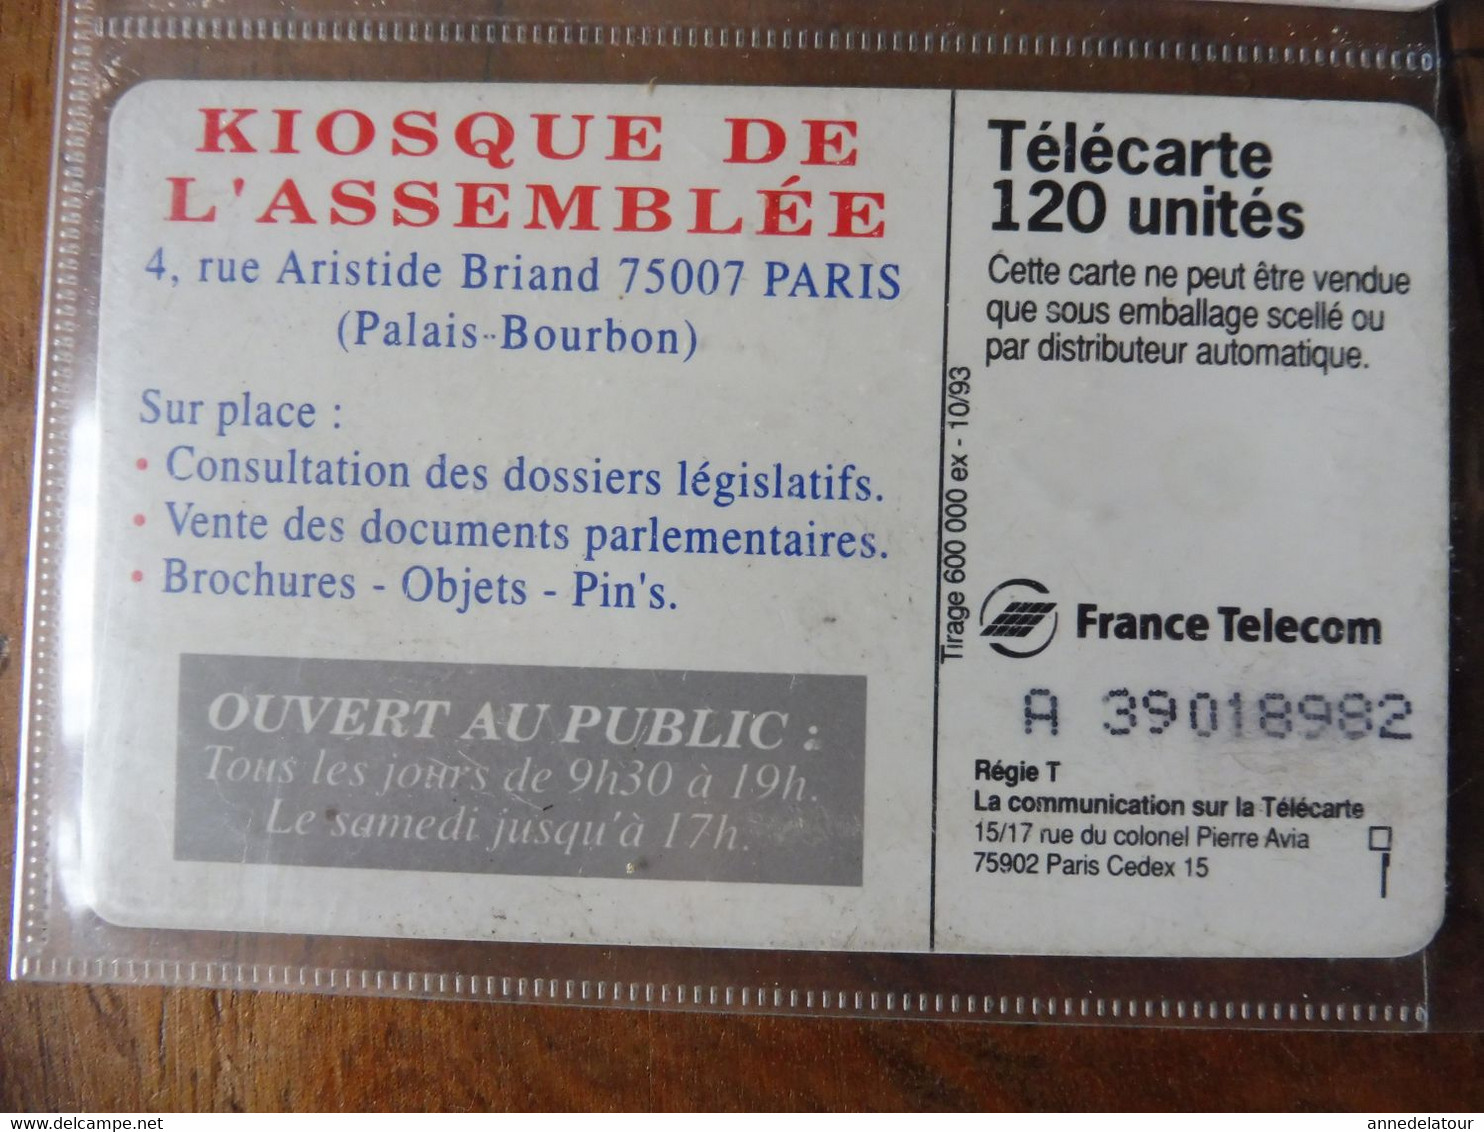 10 télécartes   ( promotion et explications du MINITEL)  FRANCE TELECOM (Magis, Siriel, Le Kiosque de l'Assemblée, etc )